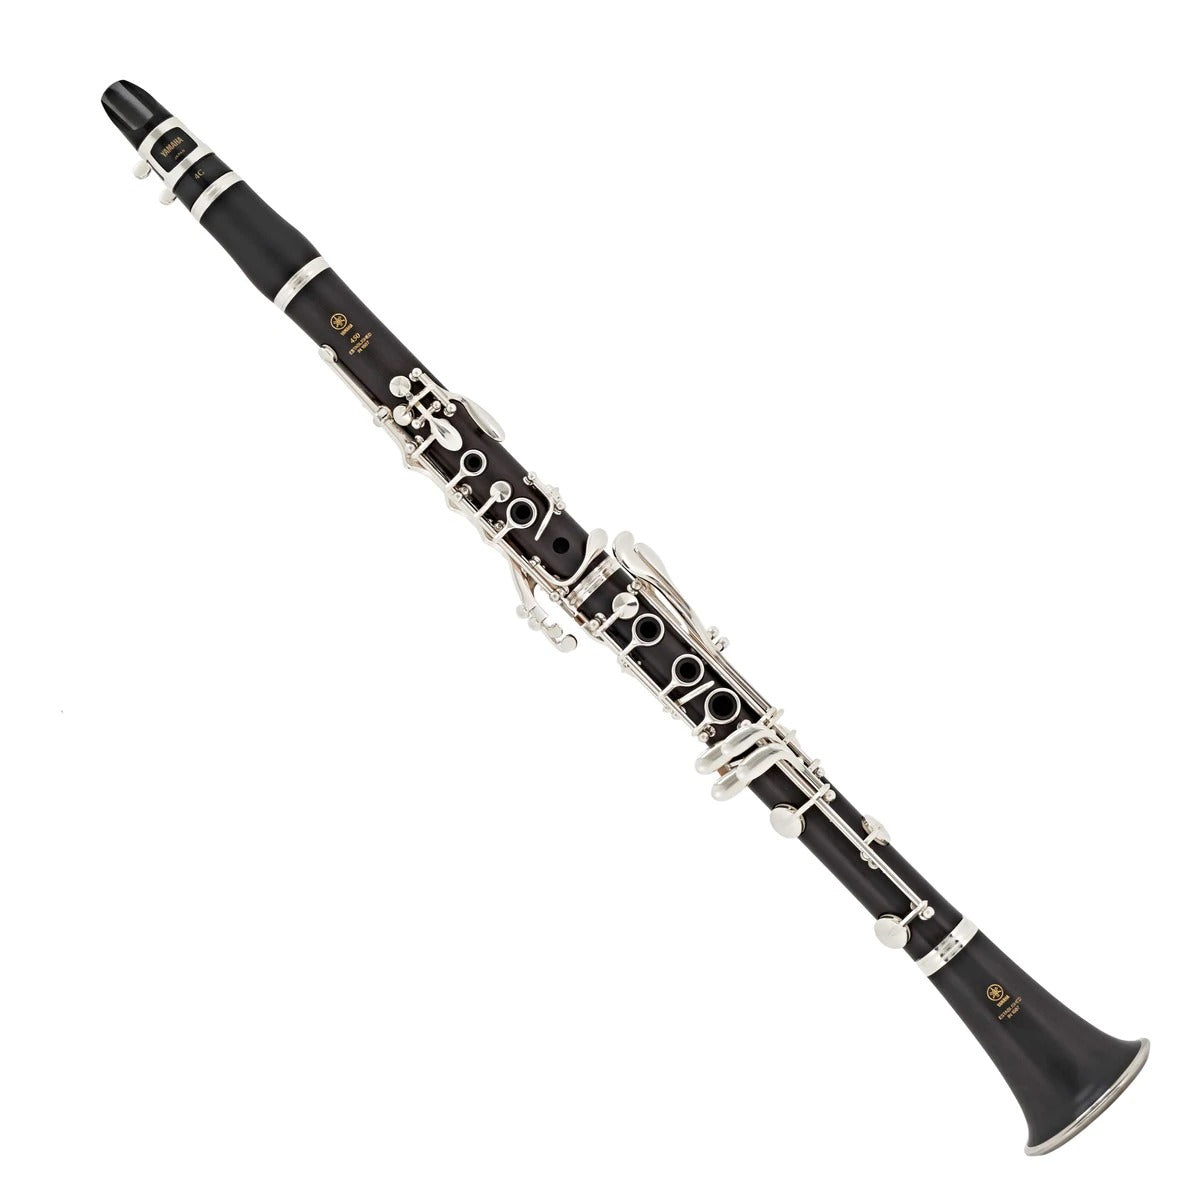 Kèn Clarinet Bb Yamaha YCL-450N-Mai Nguyên Music